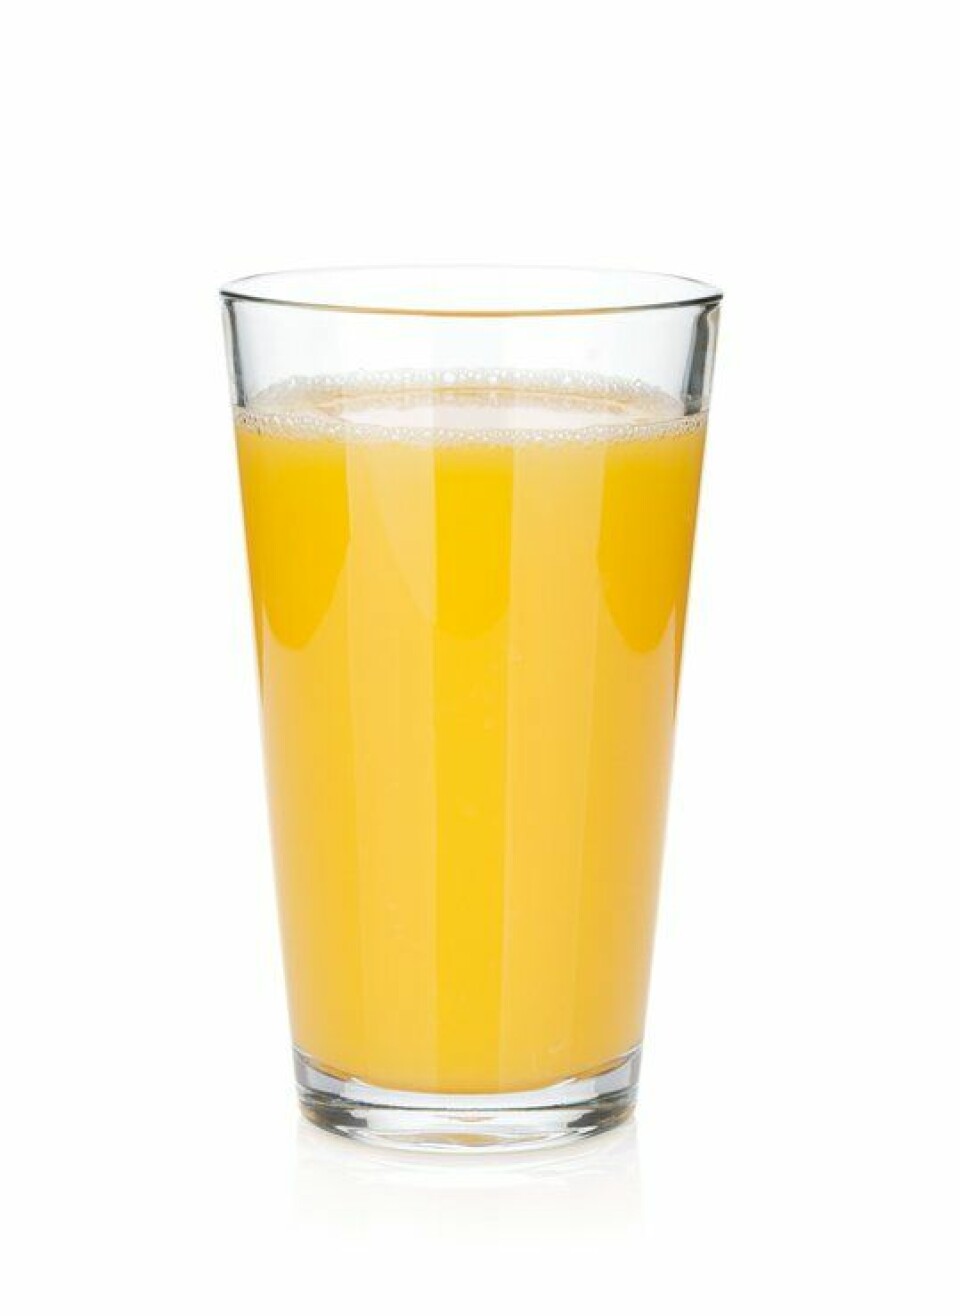 Overraskende: Juice gir i likehet med sukkerbrus økt fare for å få kreft
        
      
      
        Foto: iStock